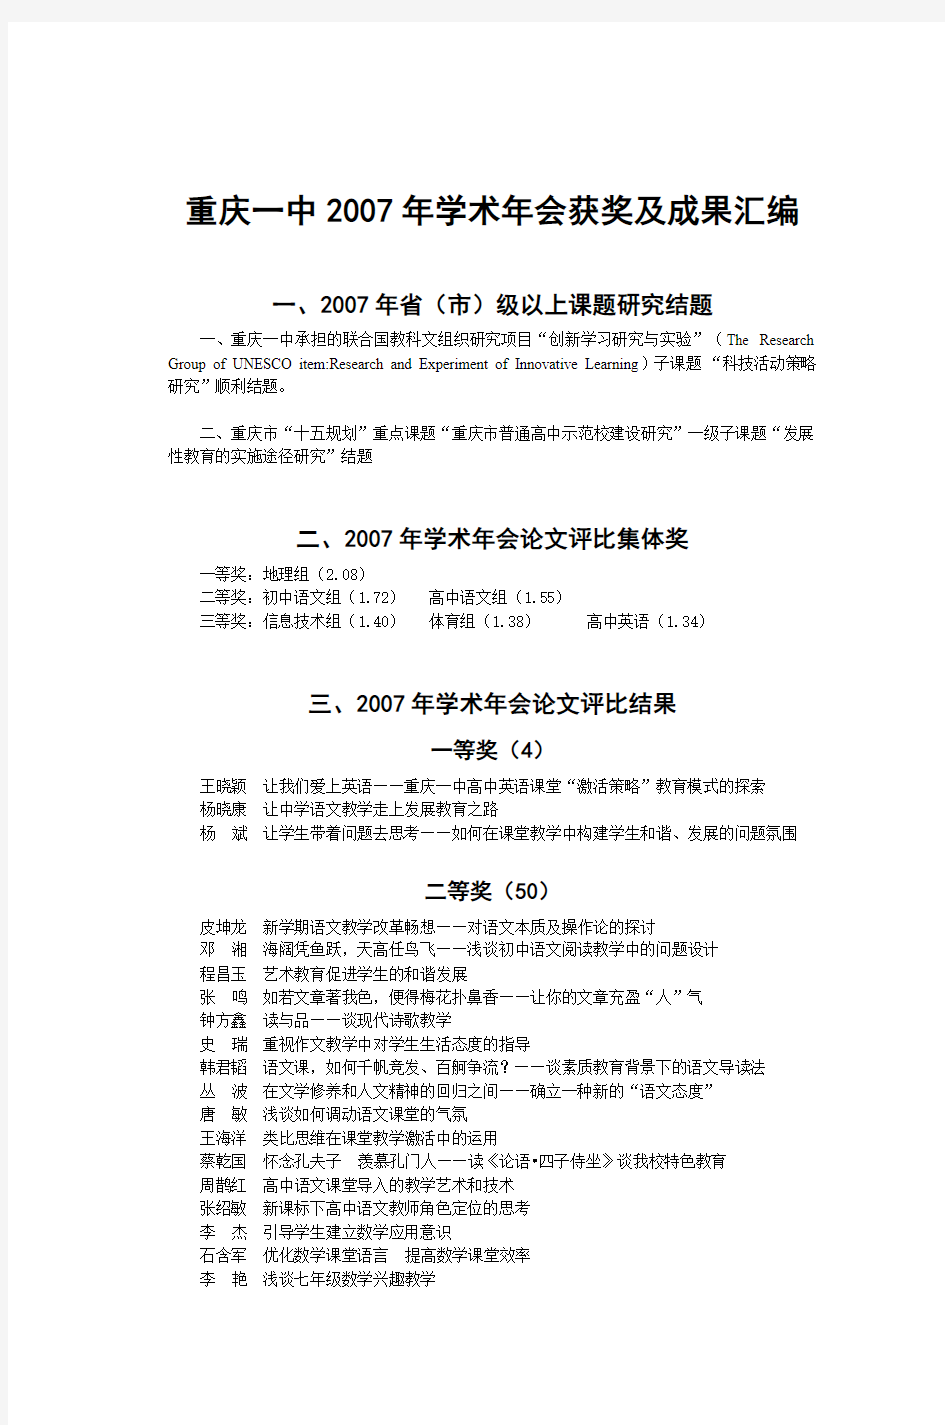 重庆一中2007年学术年会获奖及成果汇编PAGE